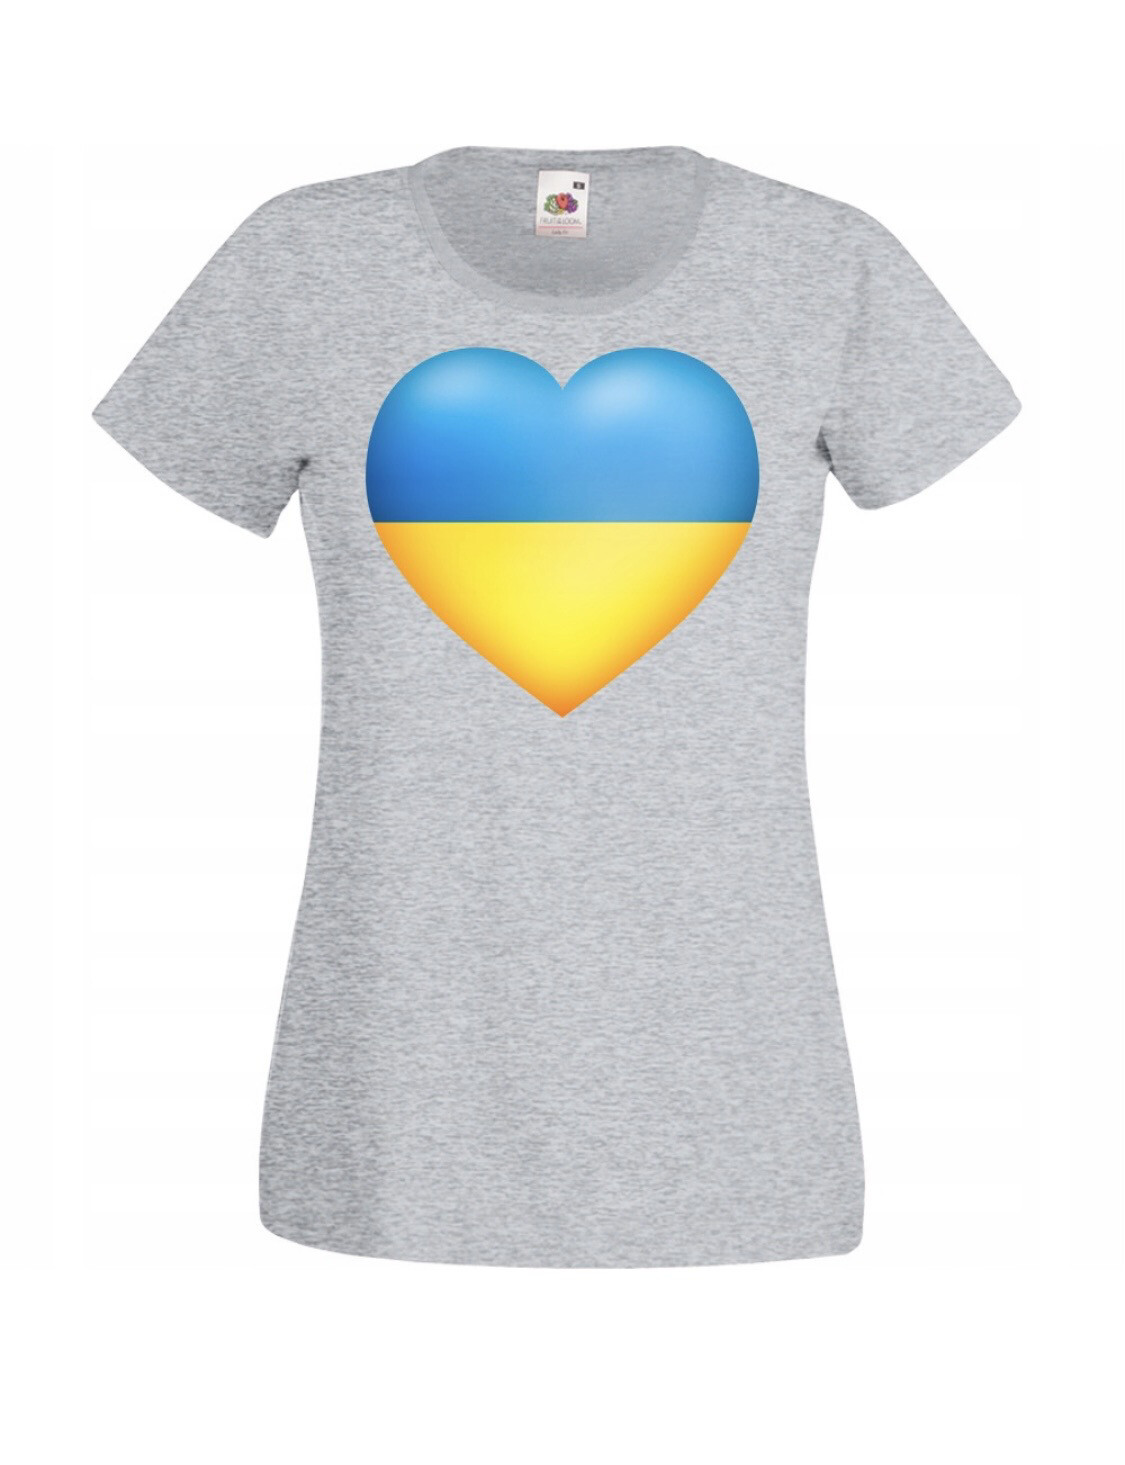 HANDMADE Damen Solidarität Free Freiheit Ukraine T-Shirt alle Größen S M L  XL XXL